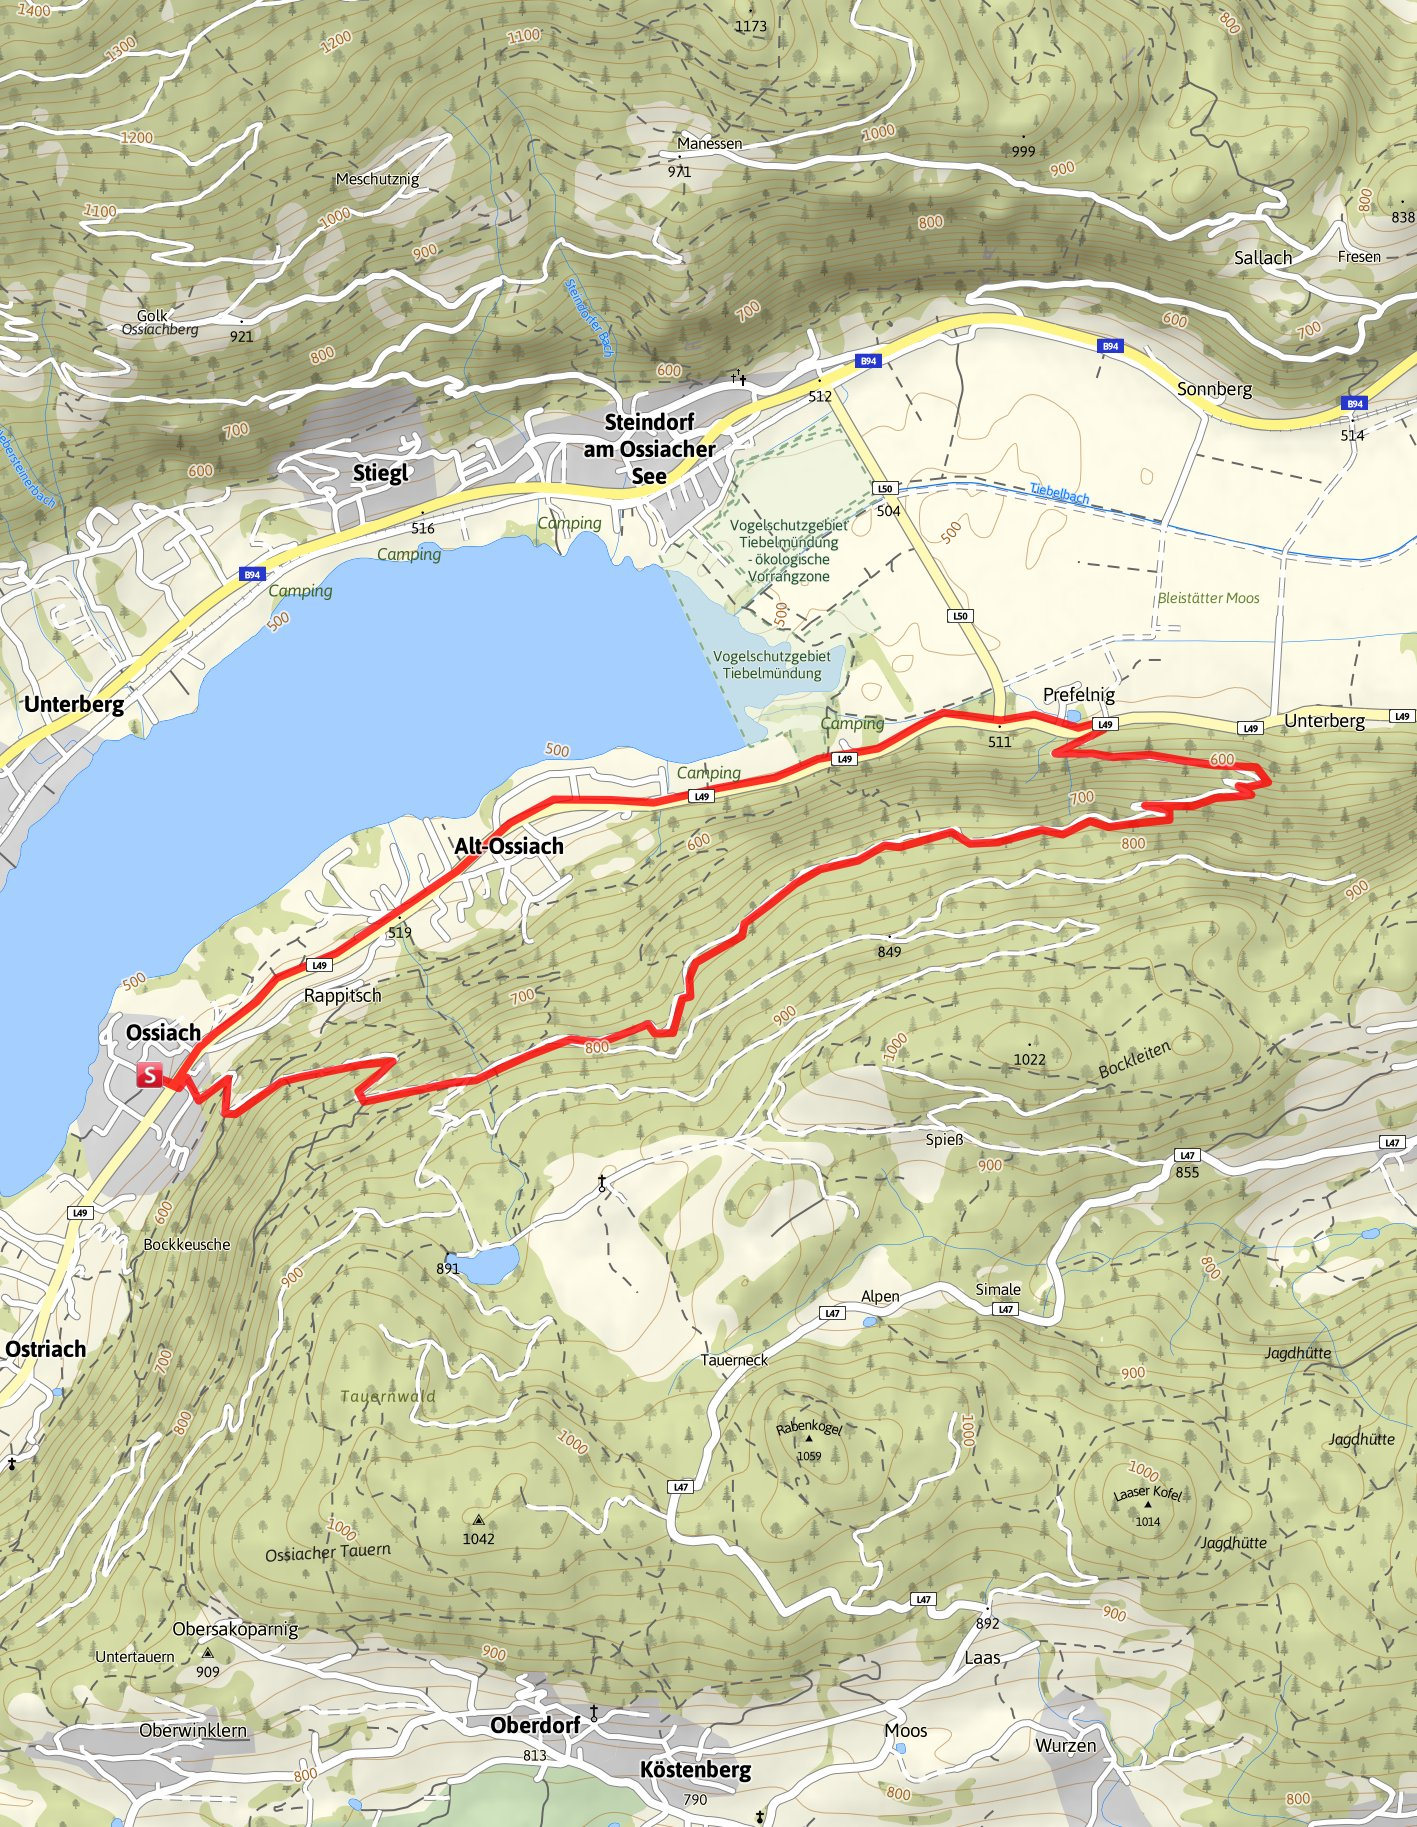 Prefelnigtour - Mountainbike Tour am Ossiacher See (Nr. 10) 11,3 km 1:45 Std.